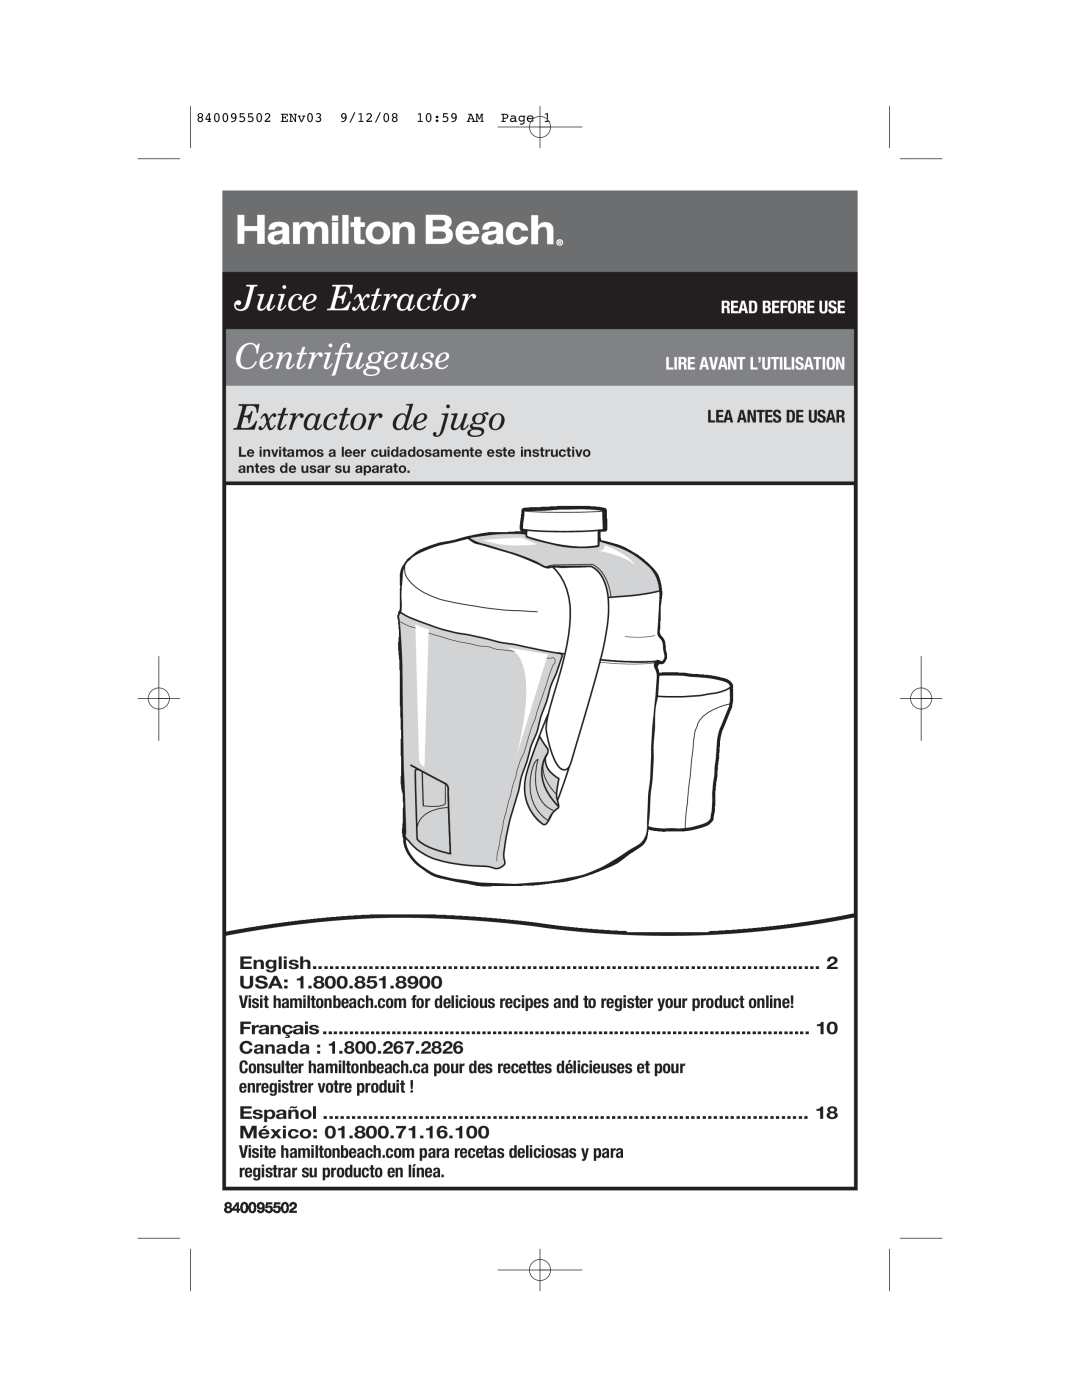 Hamilton Beach 67801 manual Juice Extractor Centrifugeuse, Extractor de jugo, Read Before Use Lire Avant L’Utilisation 